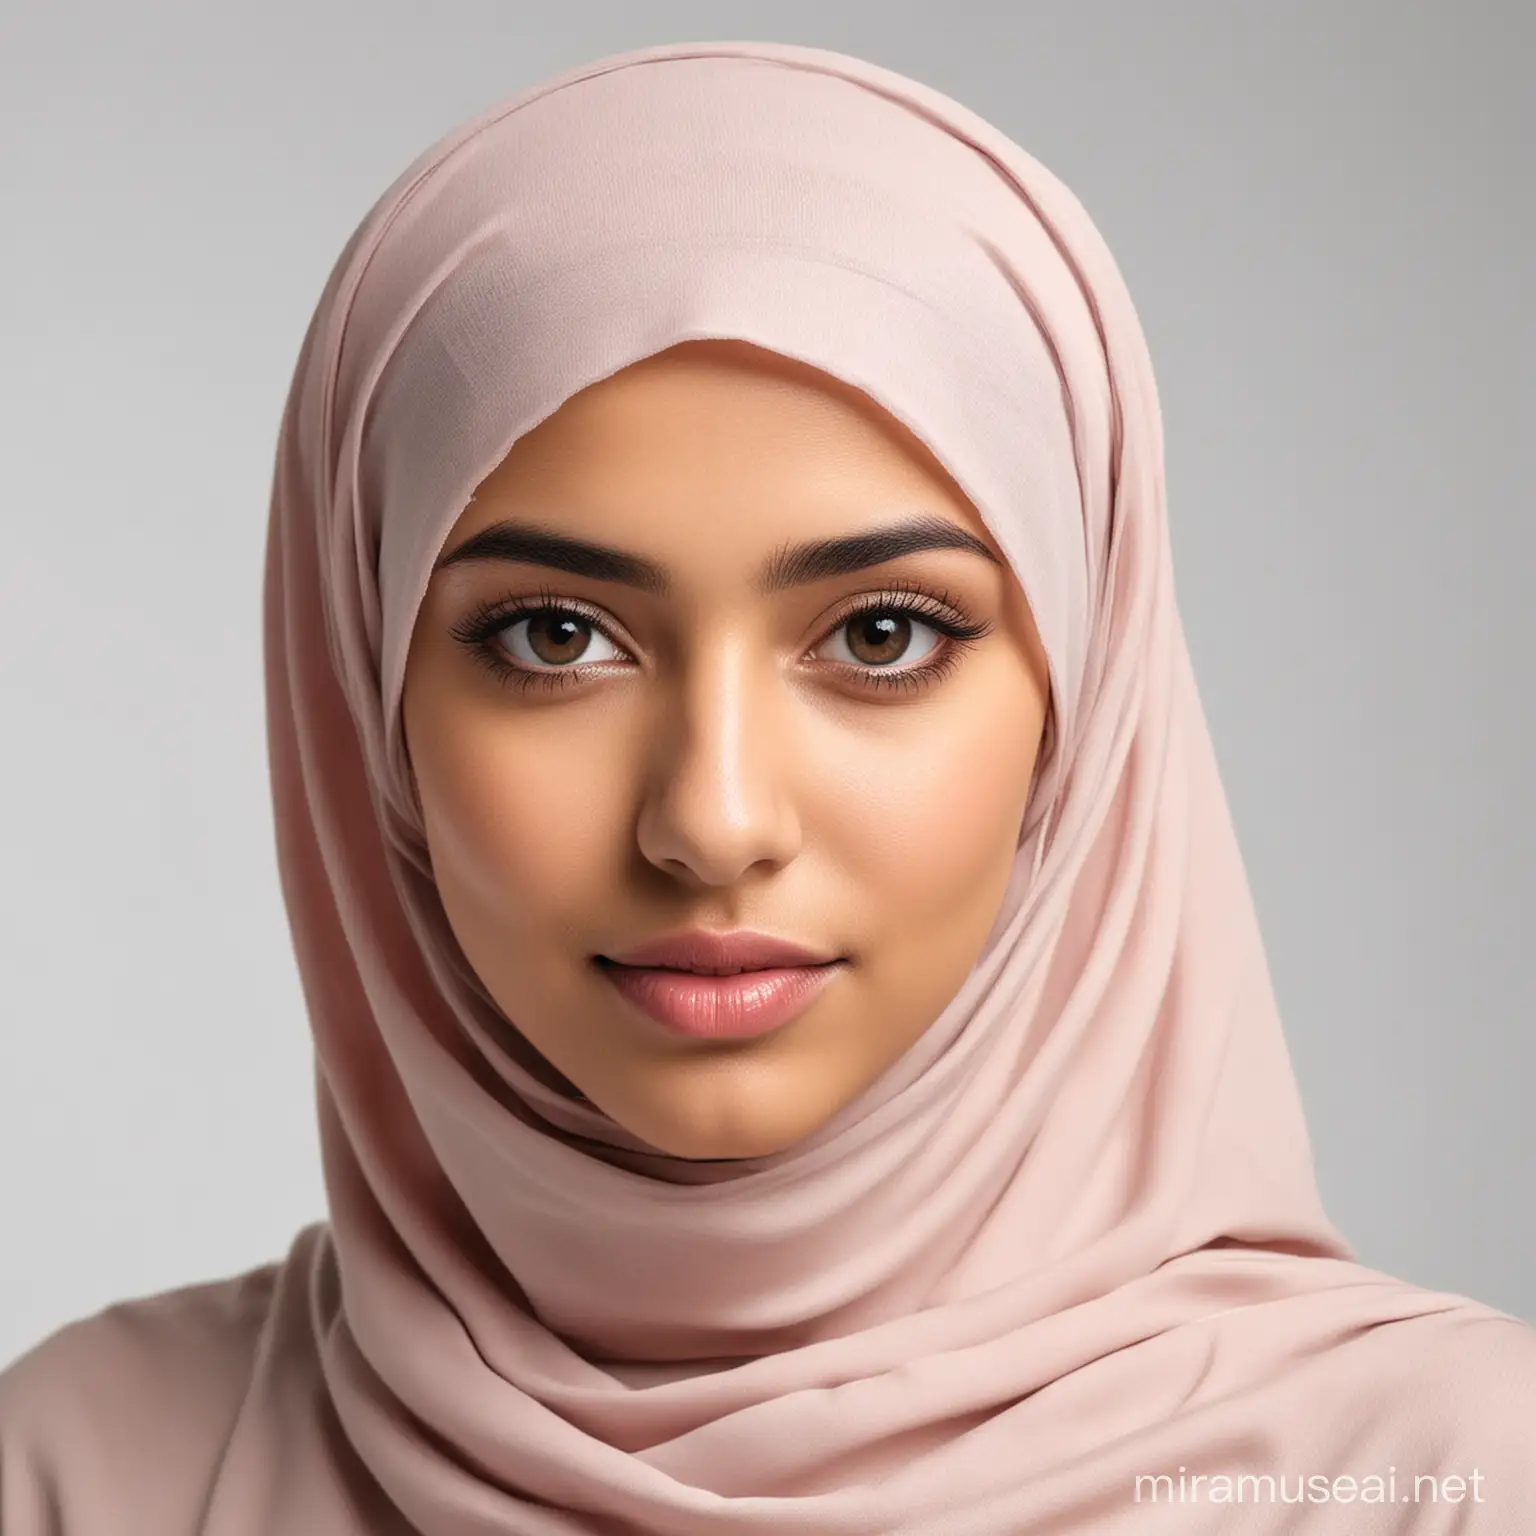 Youthful Saudi Fashion Hijabclad Woman in Elegance